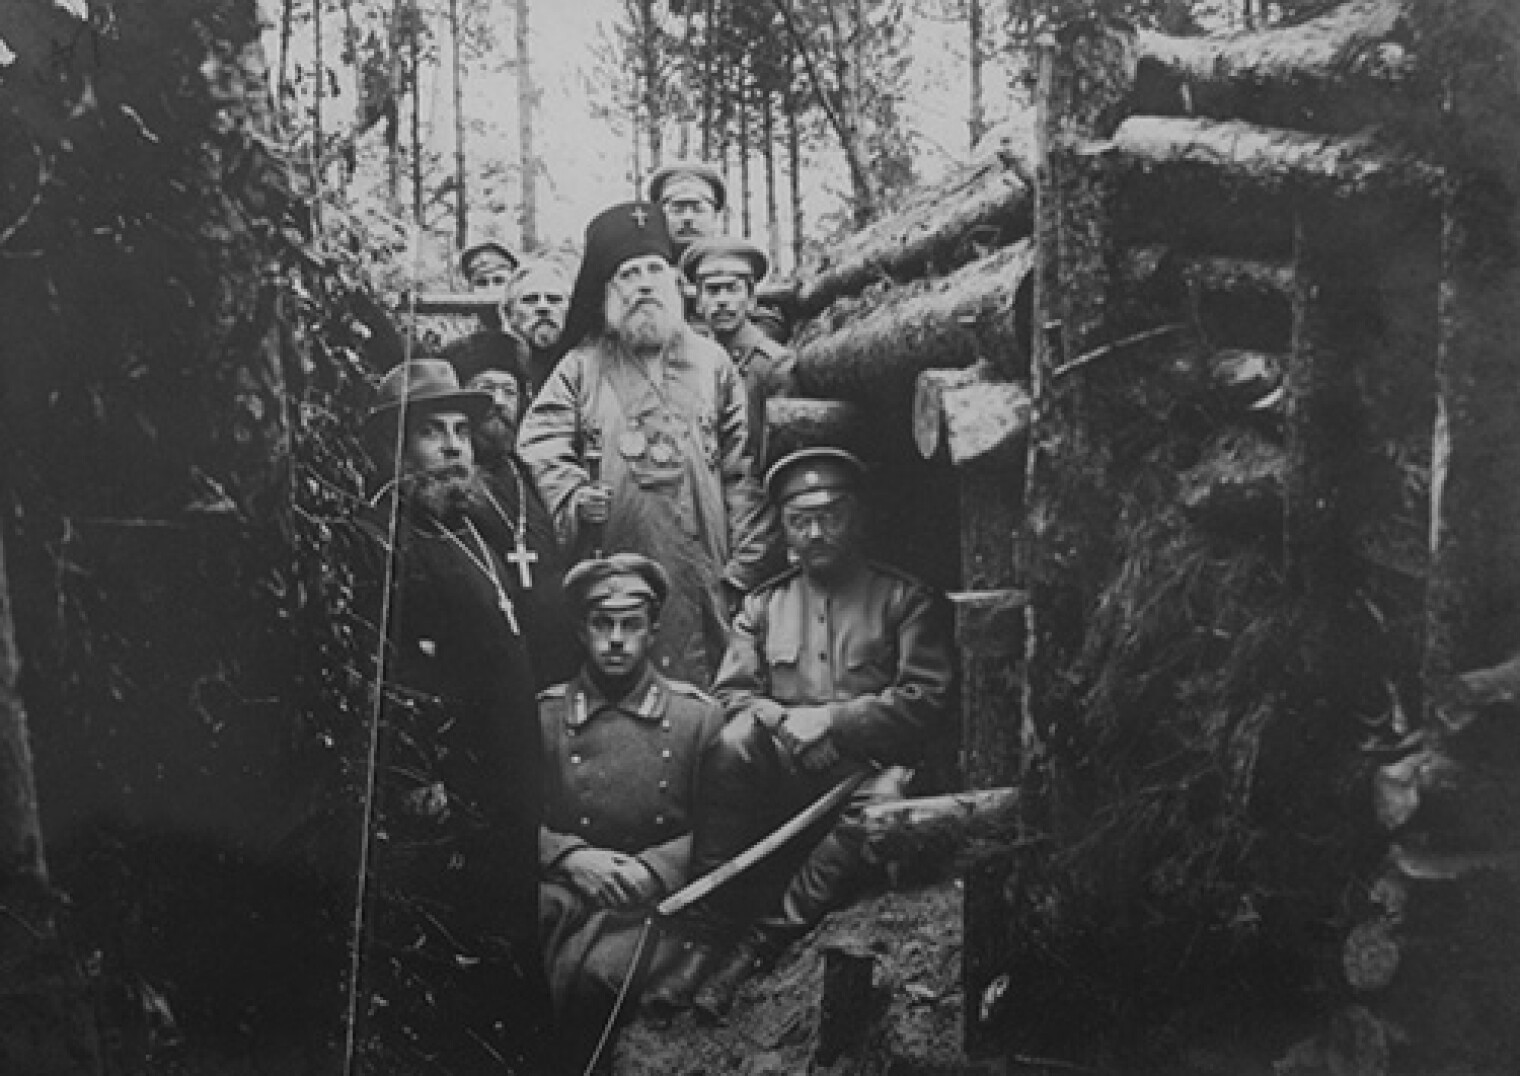 хроника одного полка 1916 год в окопах